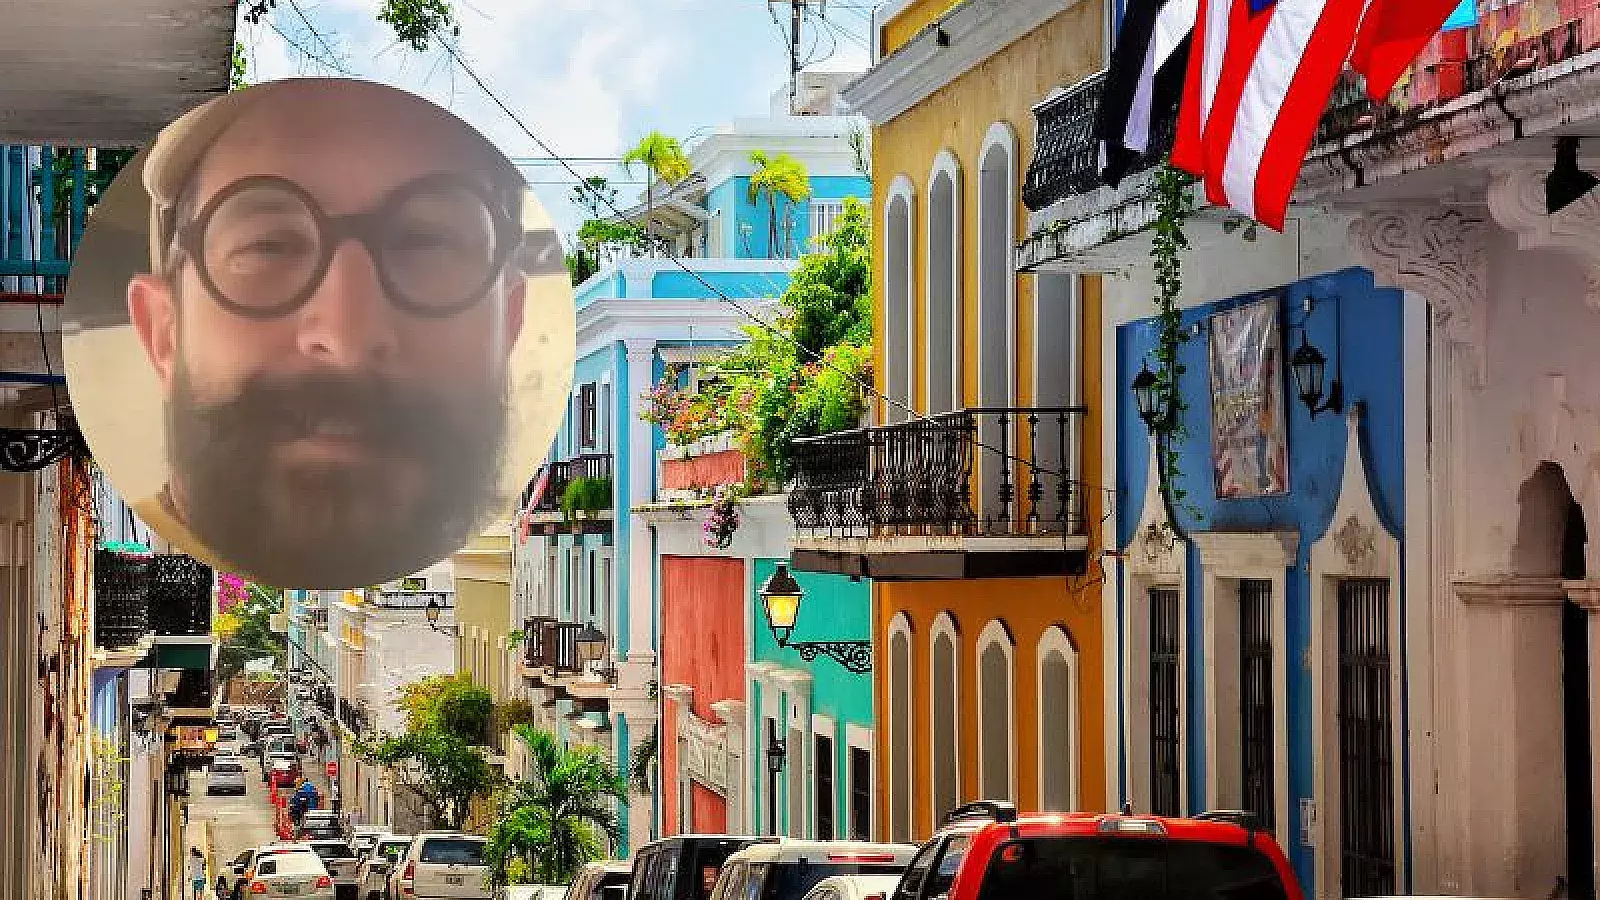 Actor cubano versiona &quot;Las 40 libras&quot; de La Diosa, en Puerto Rico. ¡Aquí el vídeo!